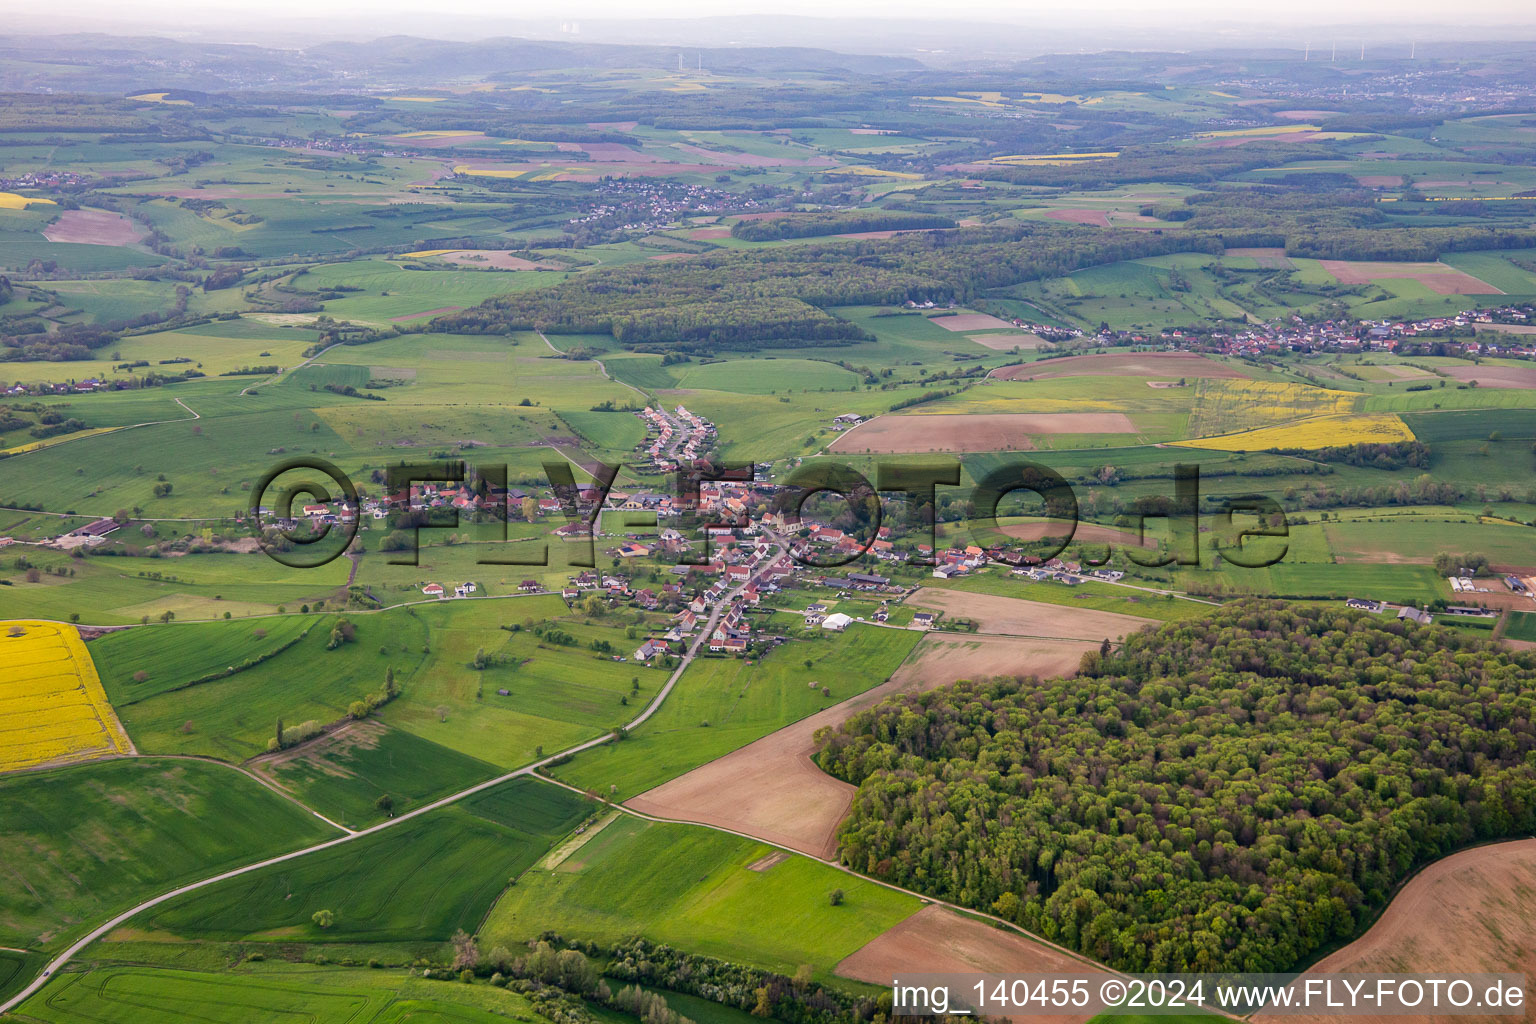 Vue aérienne de Ormersviller dans le département Moselle, France